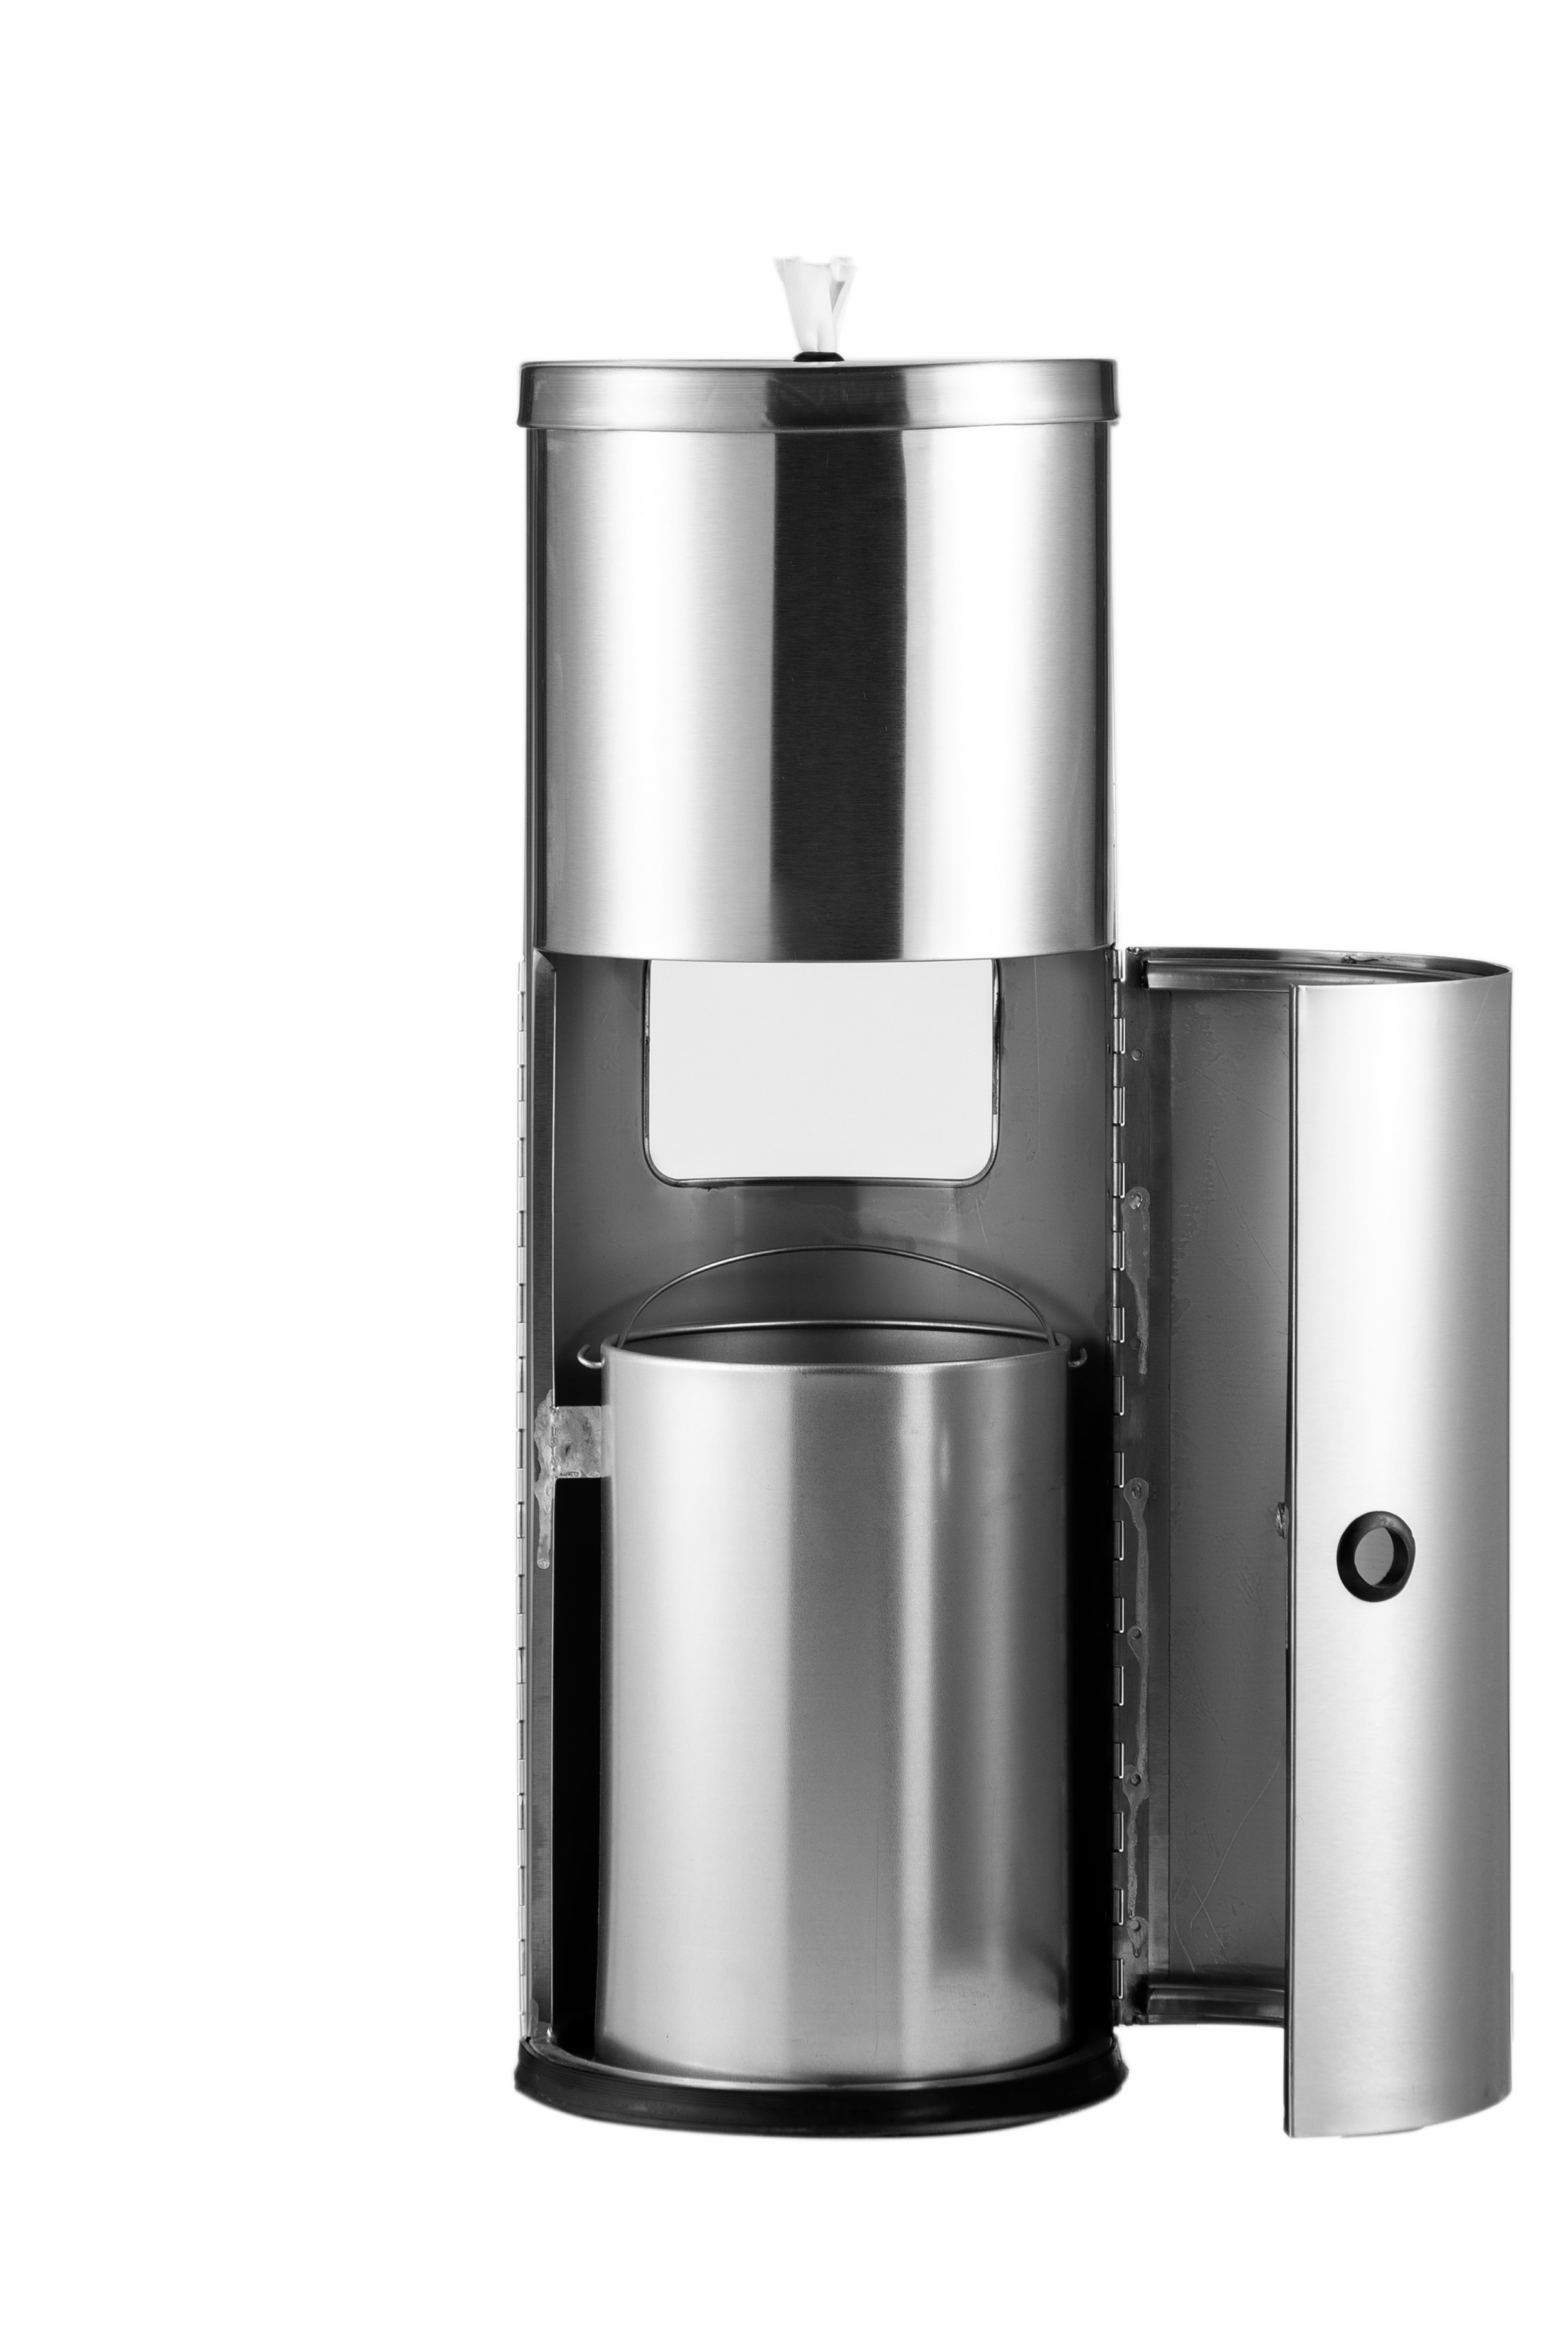 Dispenser Tisu terlaris dengan bahan stainless steel